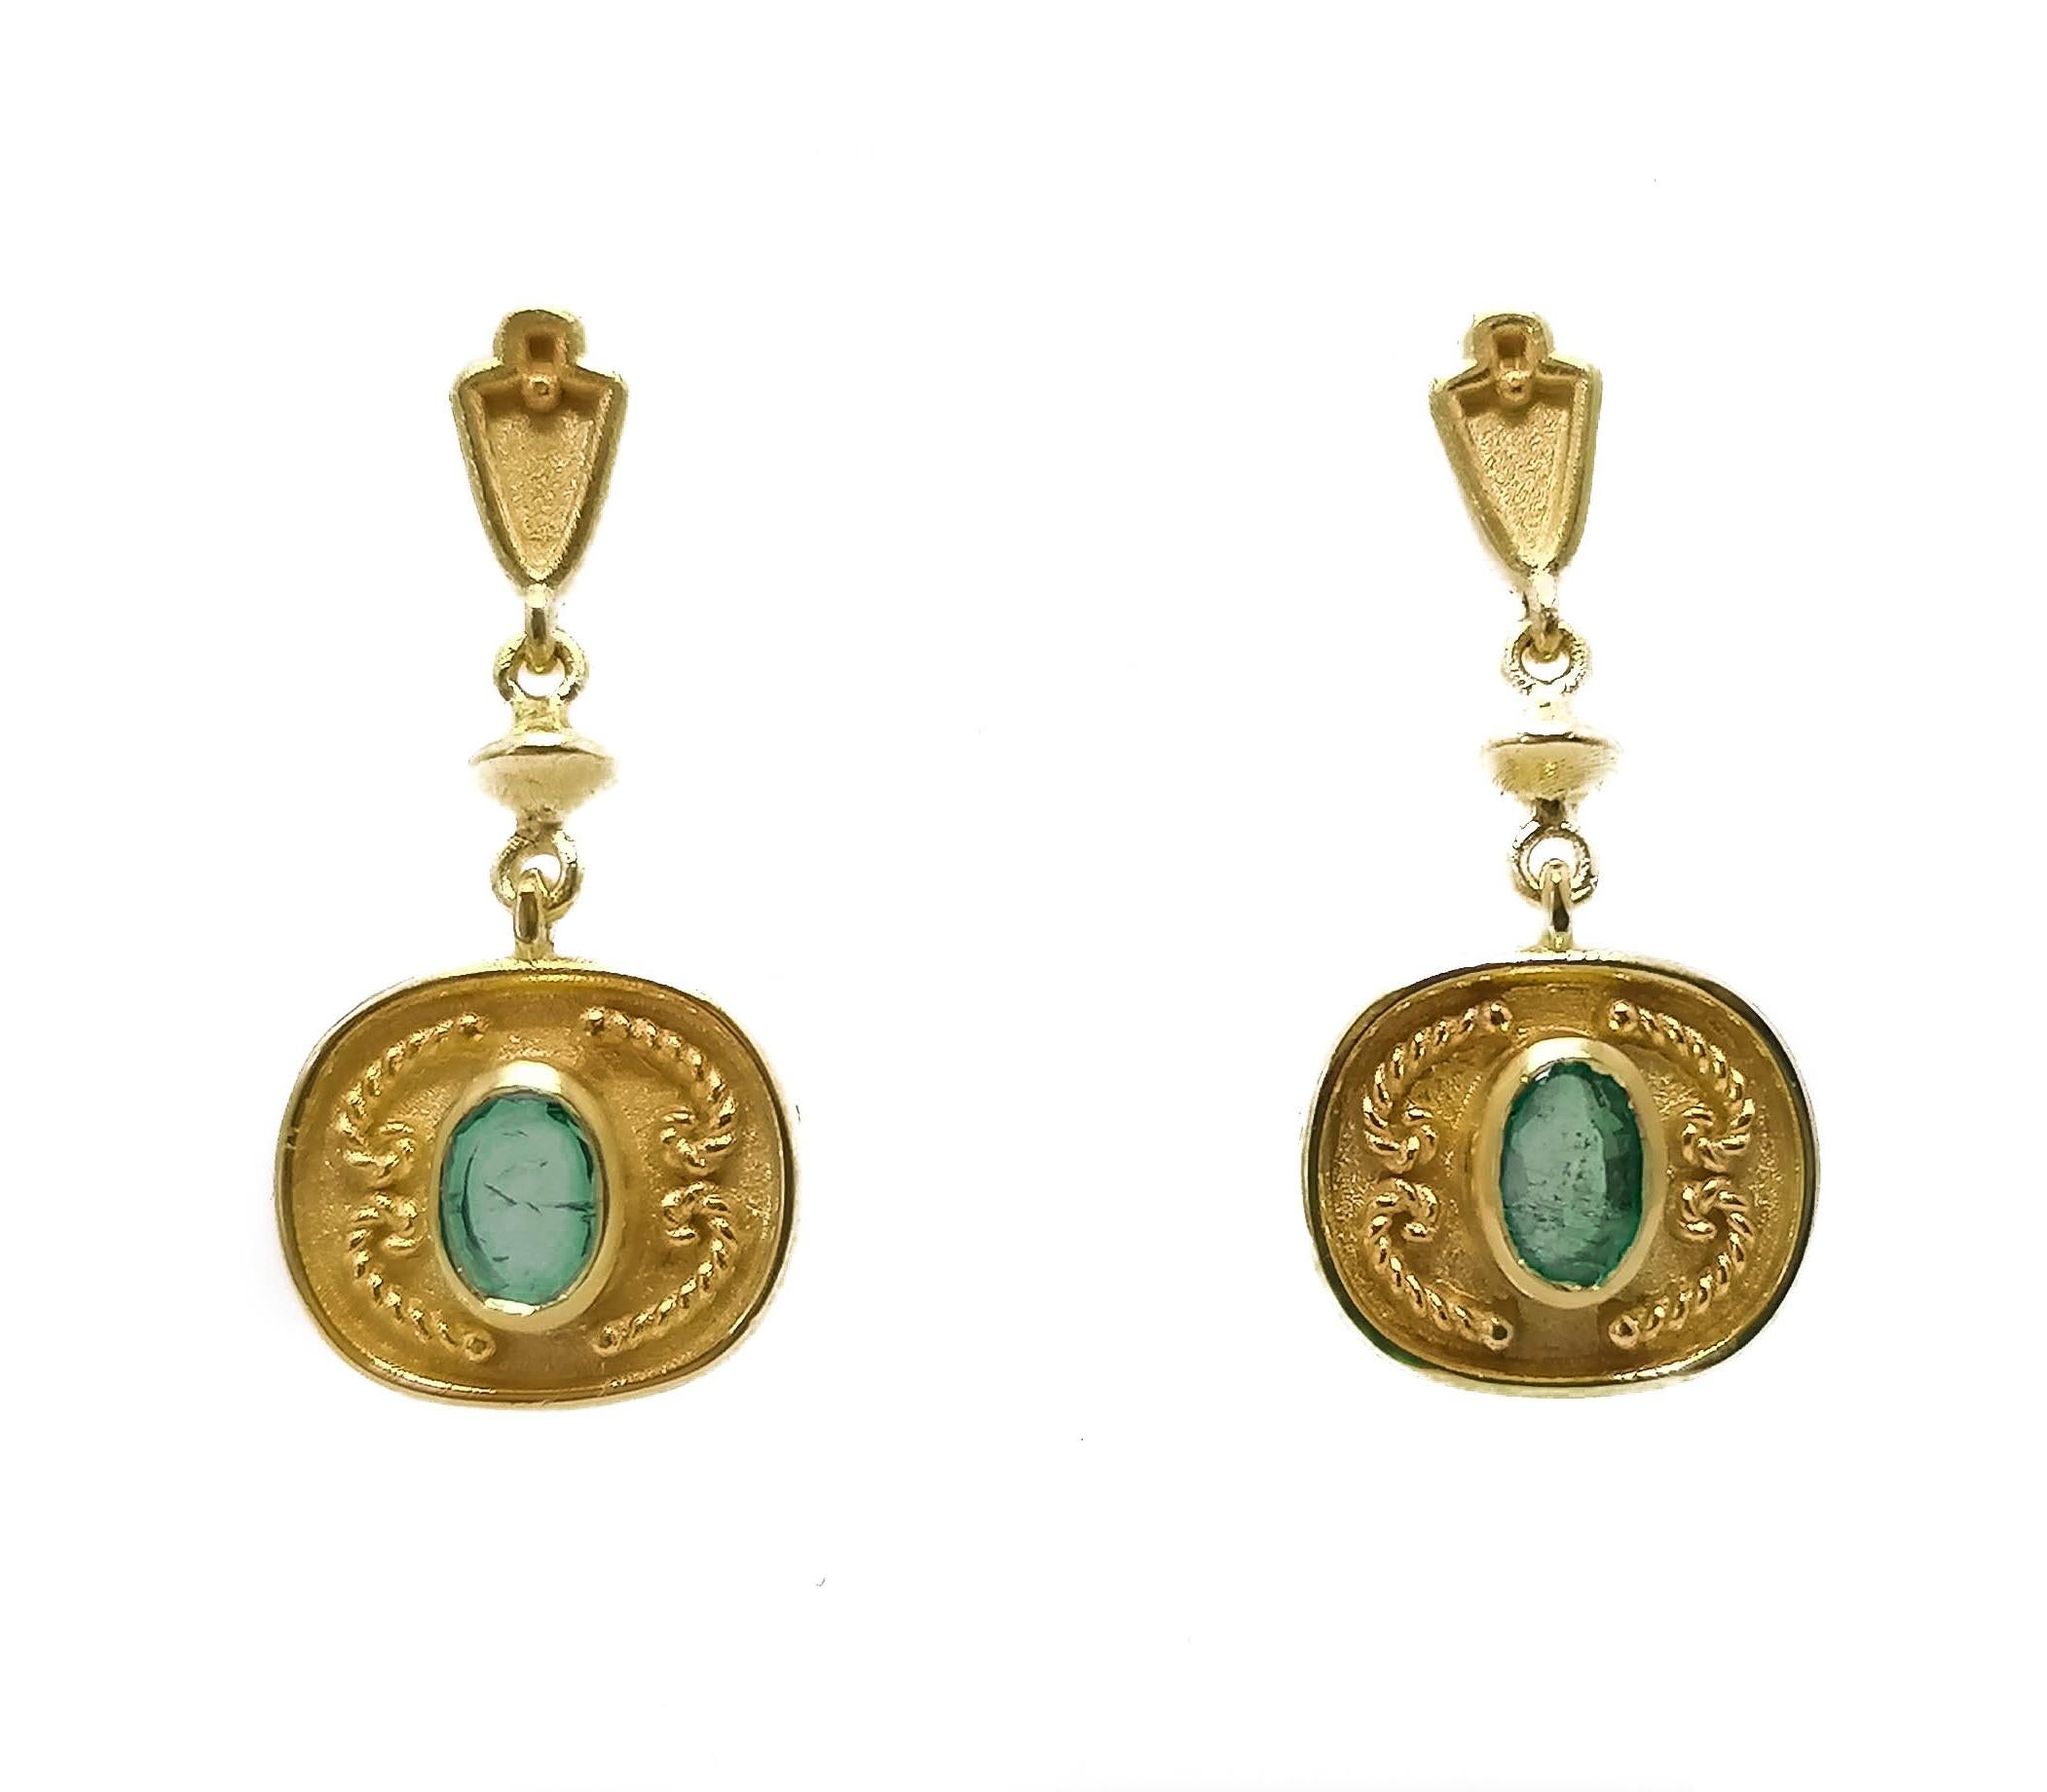 Diese Designer-Ohrringe von S.Georgios sind aus 18 Karat Gelbgold handgefertigt und mit einer mikroskopischen Granulierung im etruskischen Stil verziert. Diese wunderschönen Ohrringe bestehen aus 2 natürlichen Smaragden im Ovalschliff mit einem